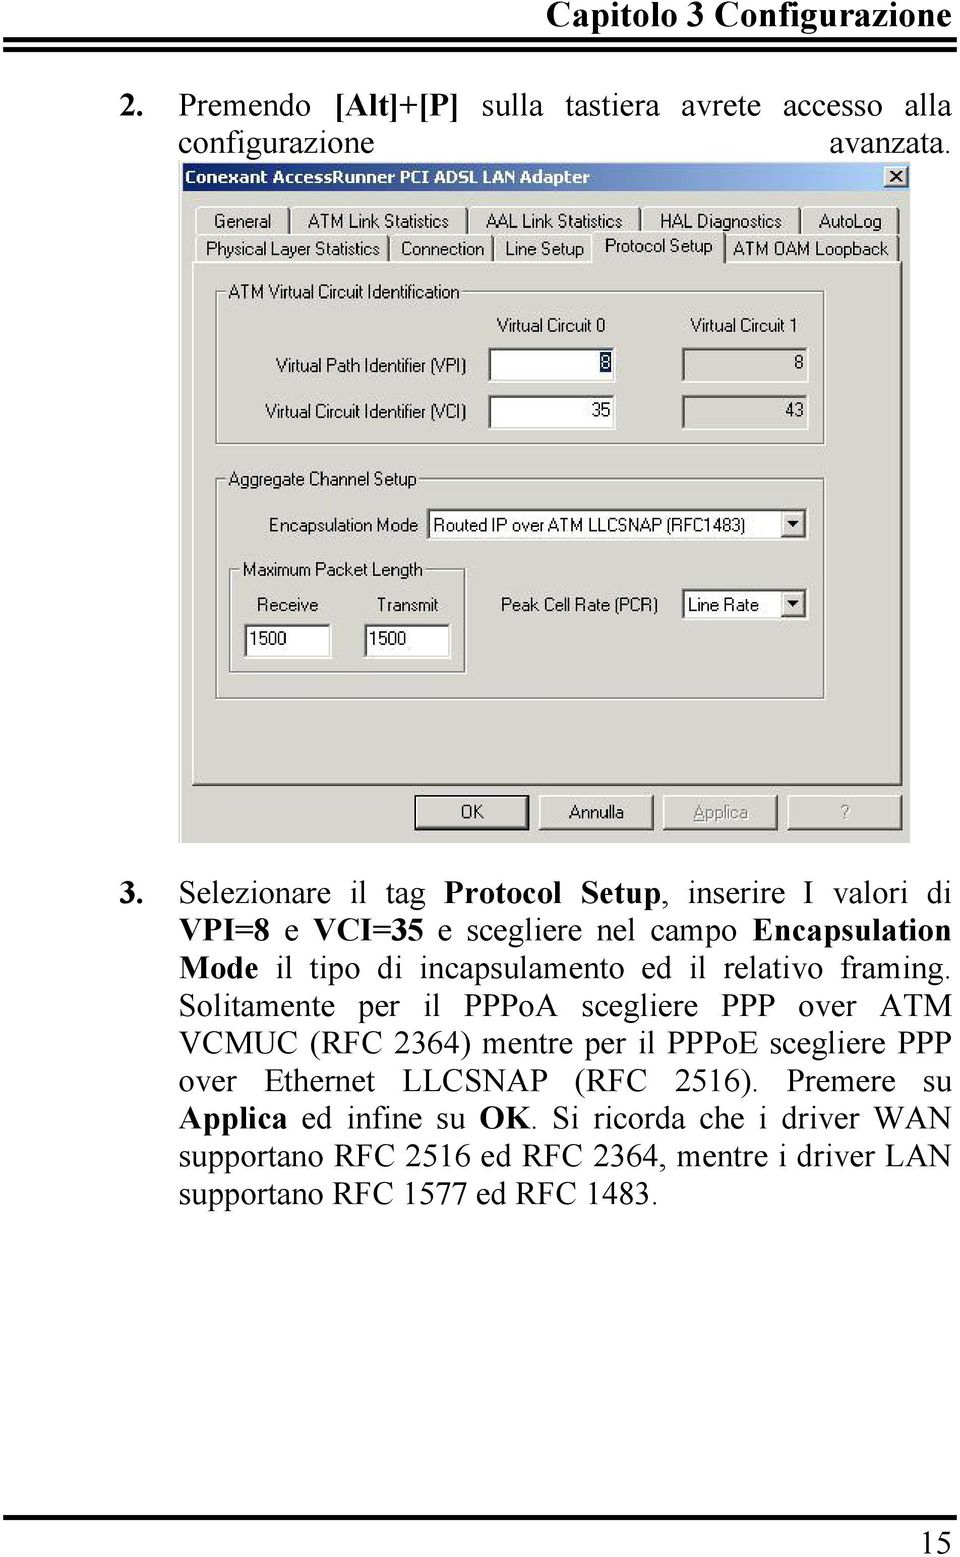 Selezionare il tag Protocol Setup, inserire I valori di VPI=8 e VCI=35 e scegliere nel campo Encapsulation Mode il tipo di incapsulamento